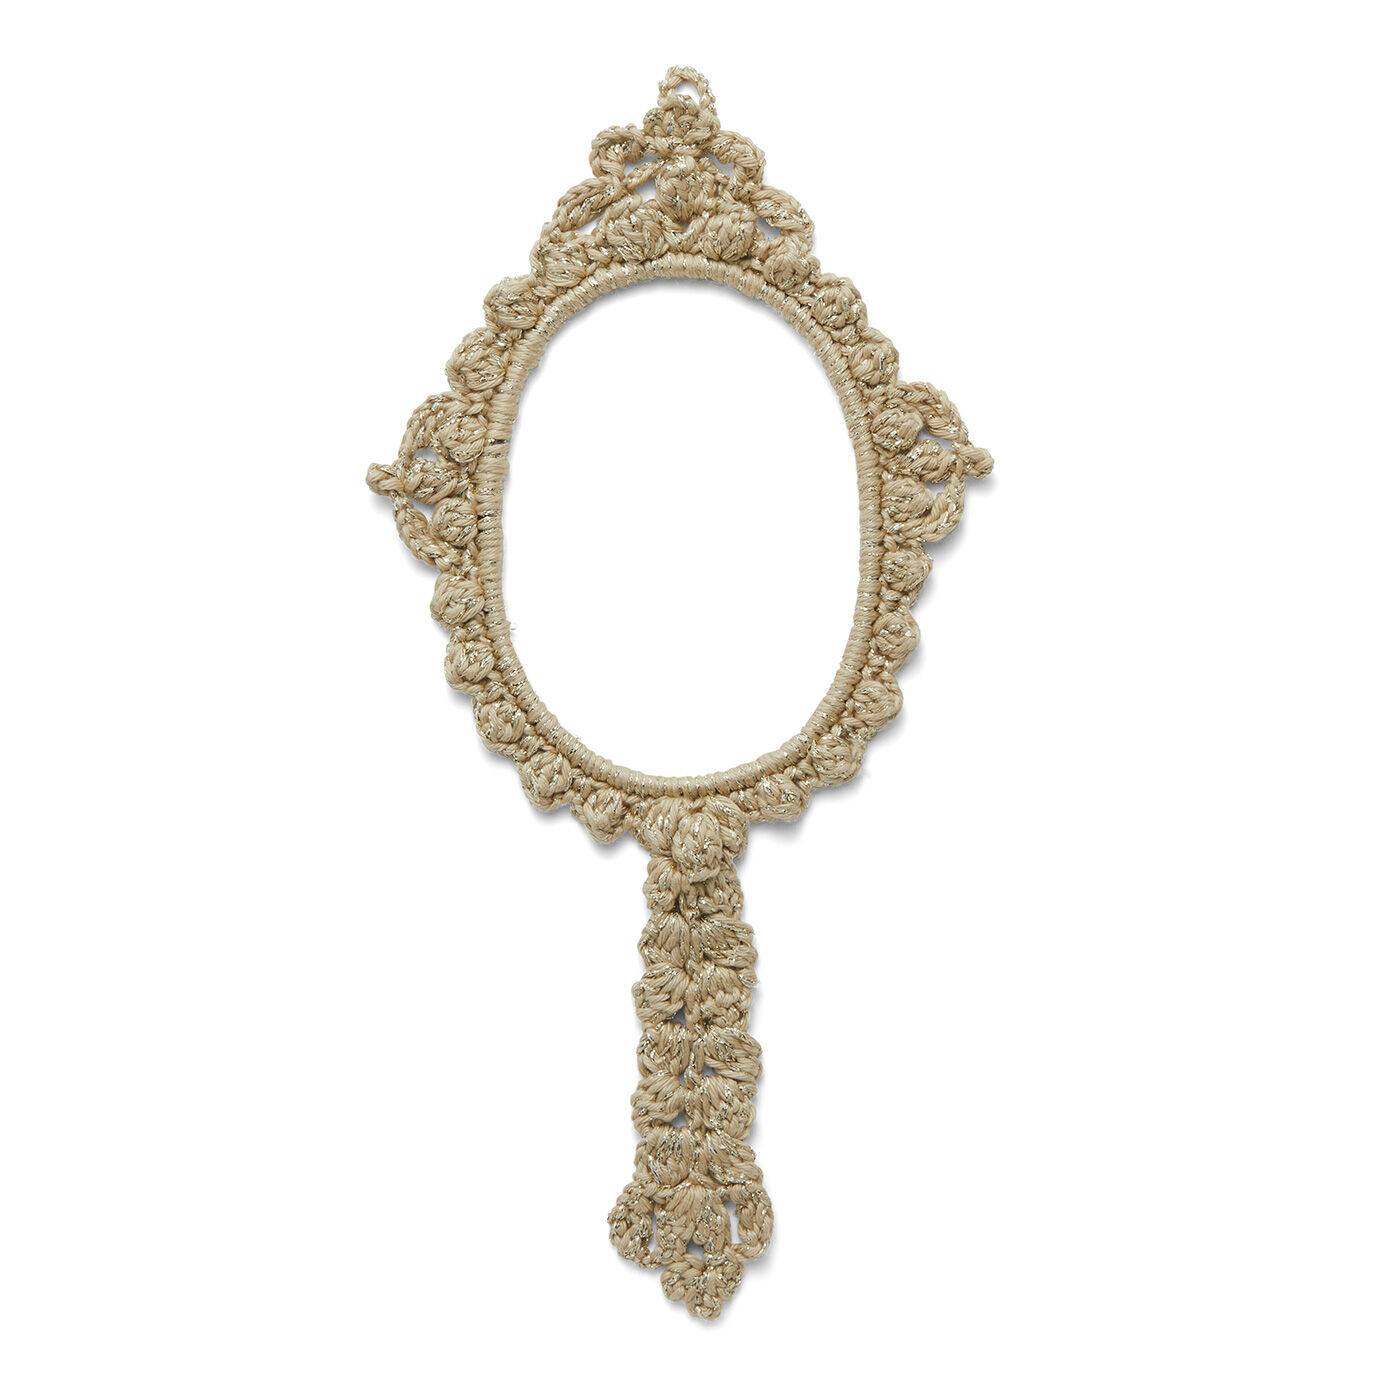 クチュリエ|まるで小さな美術館 かぎ針編みで立体的に再現するアンティークな額縁の会|貴族に愛された純金の手鏡